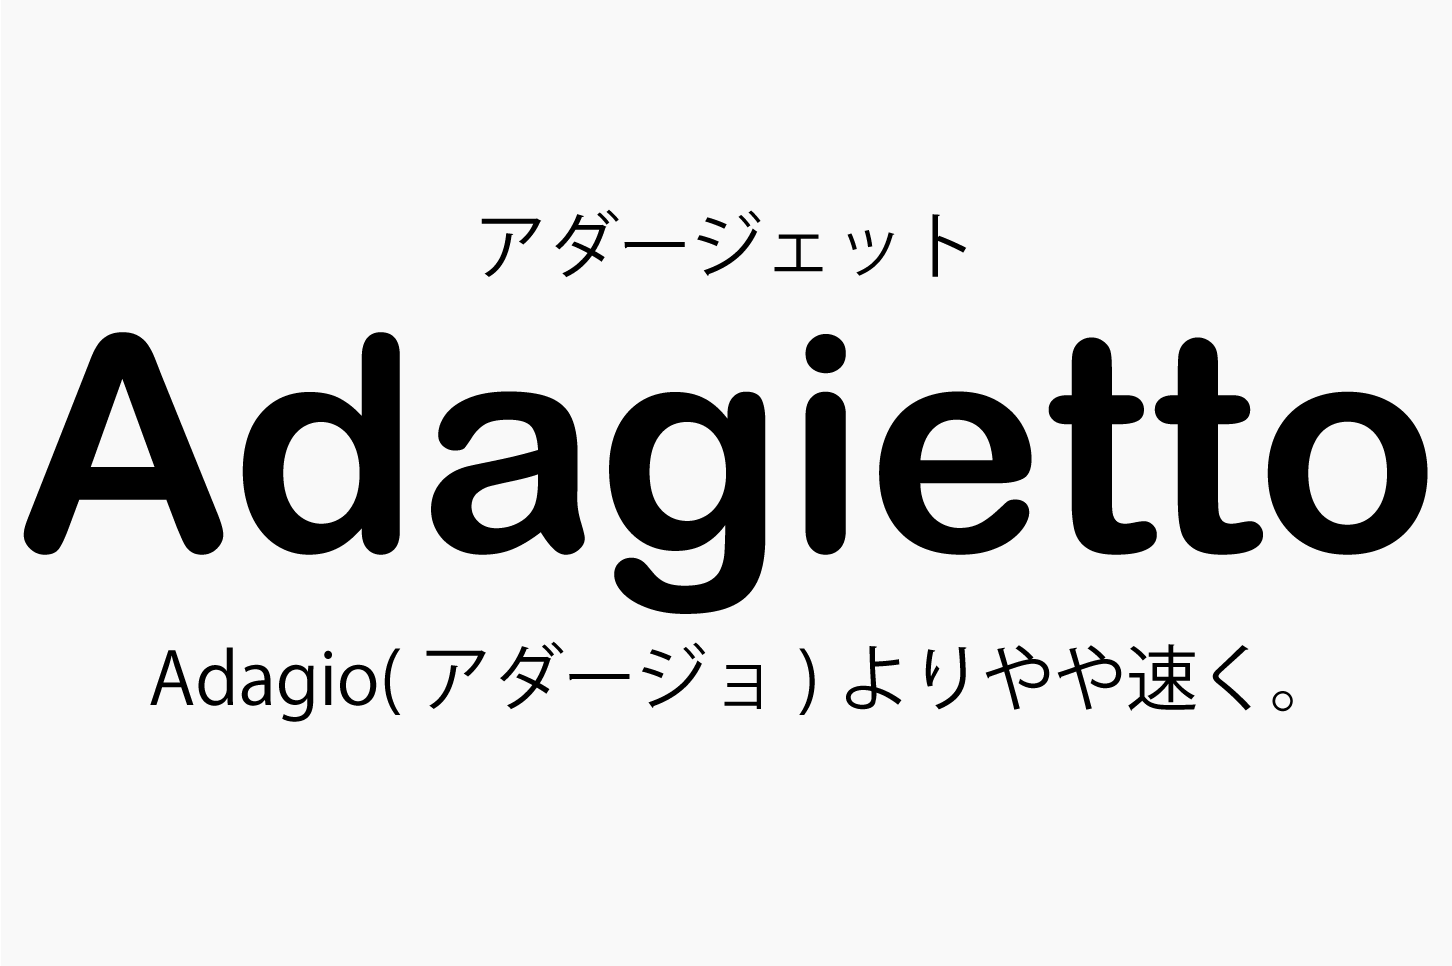 Adagietto（アダージェット）の意味 Adagio（アダージョ）よりやや速く。